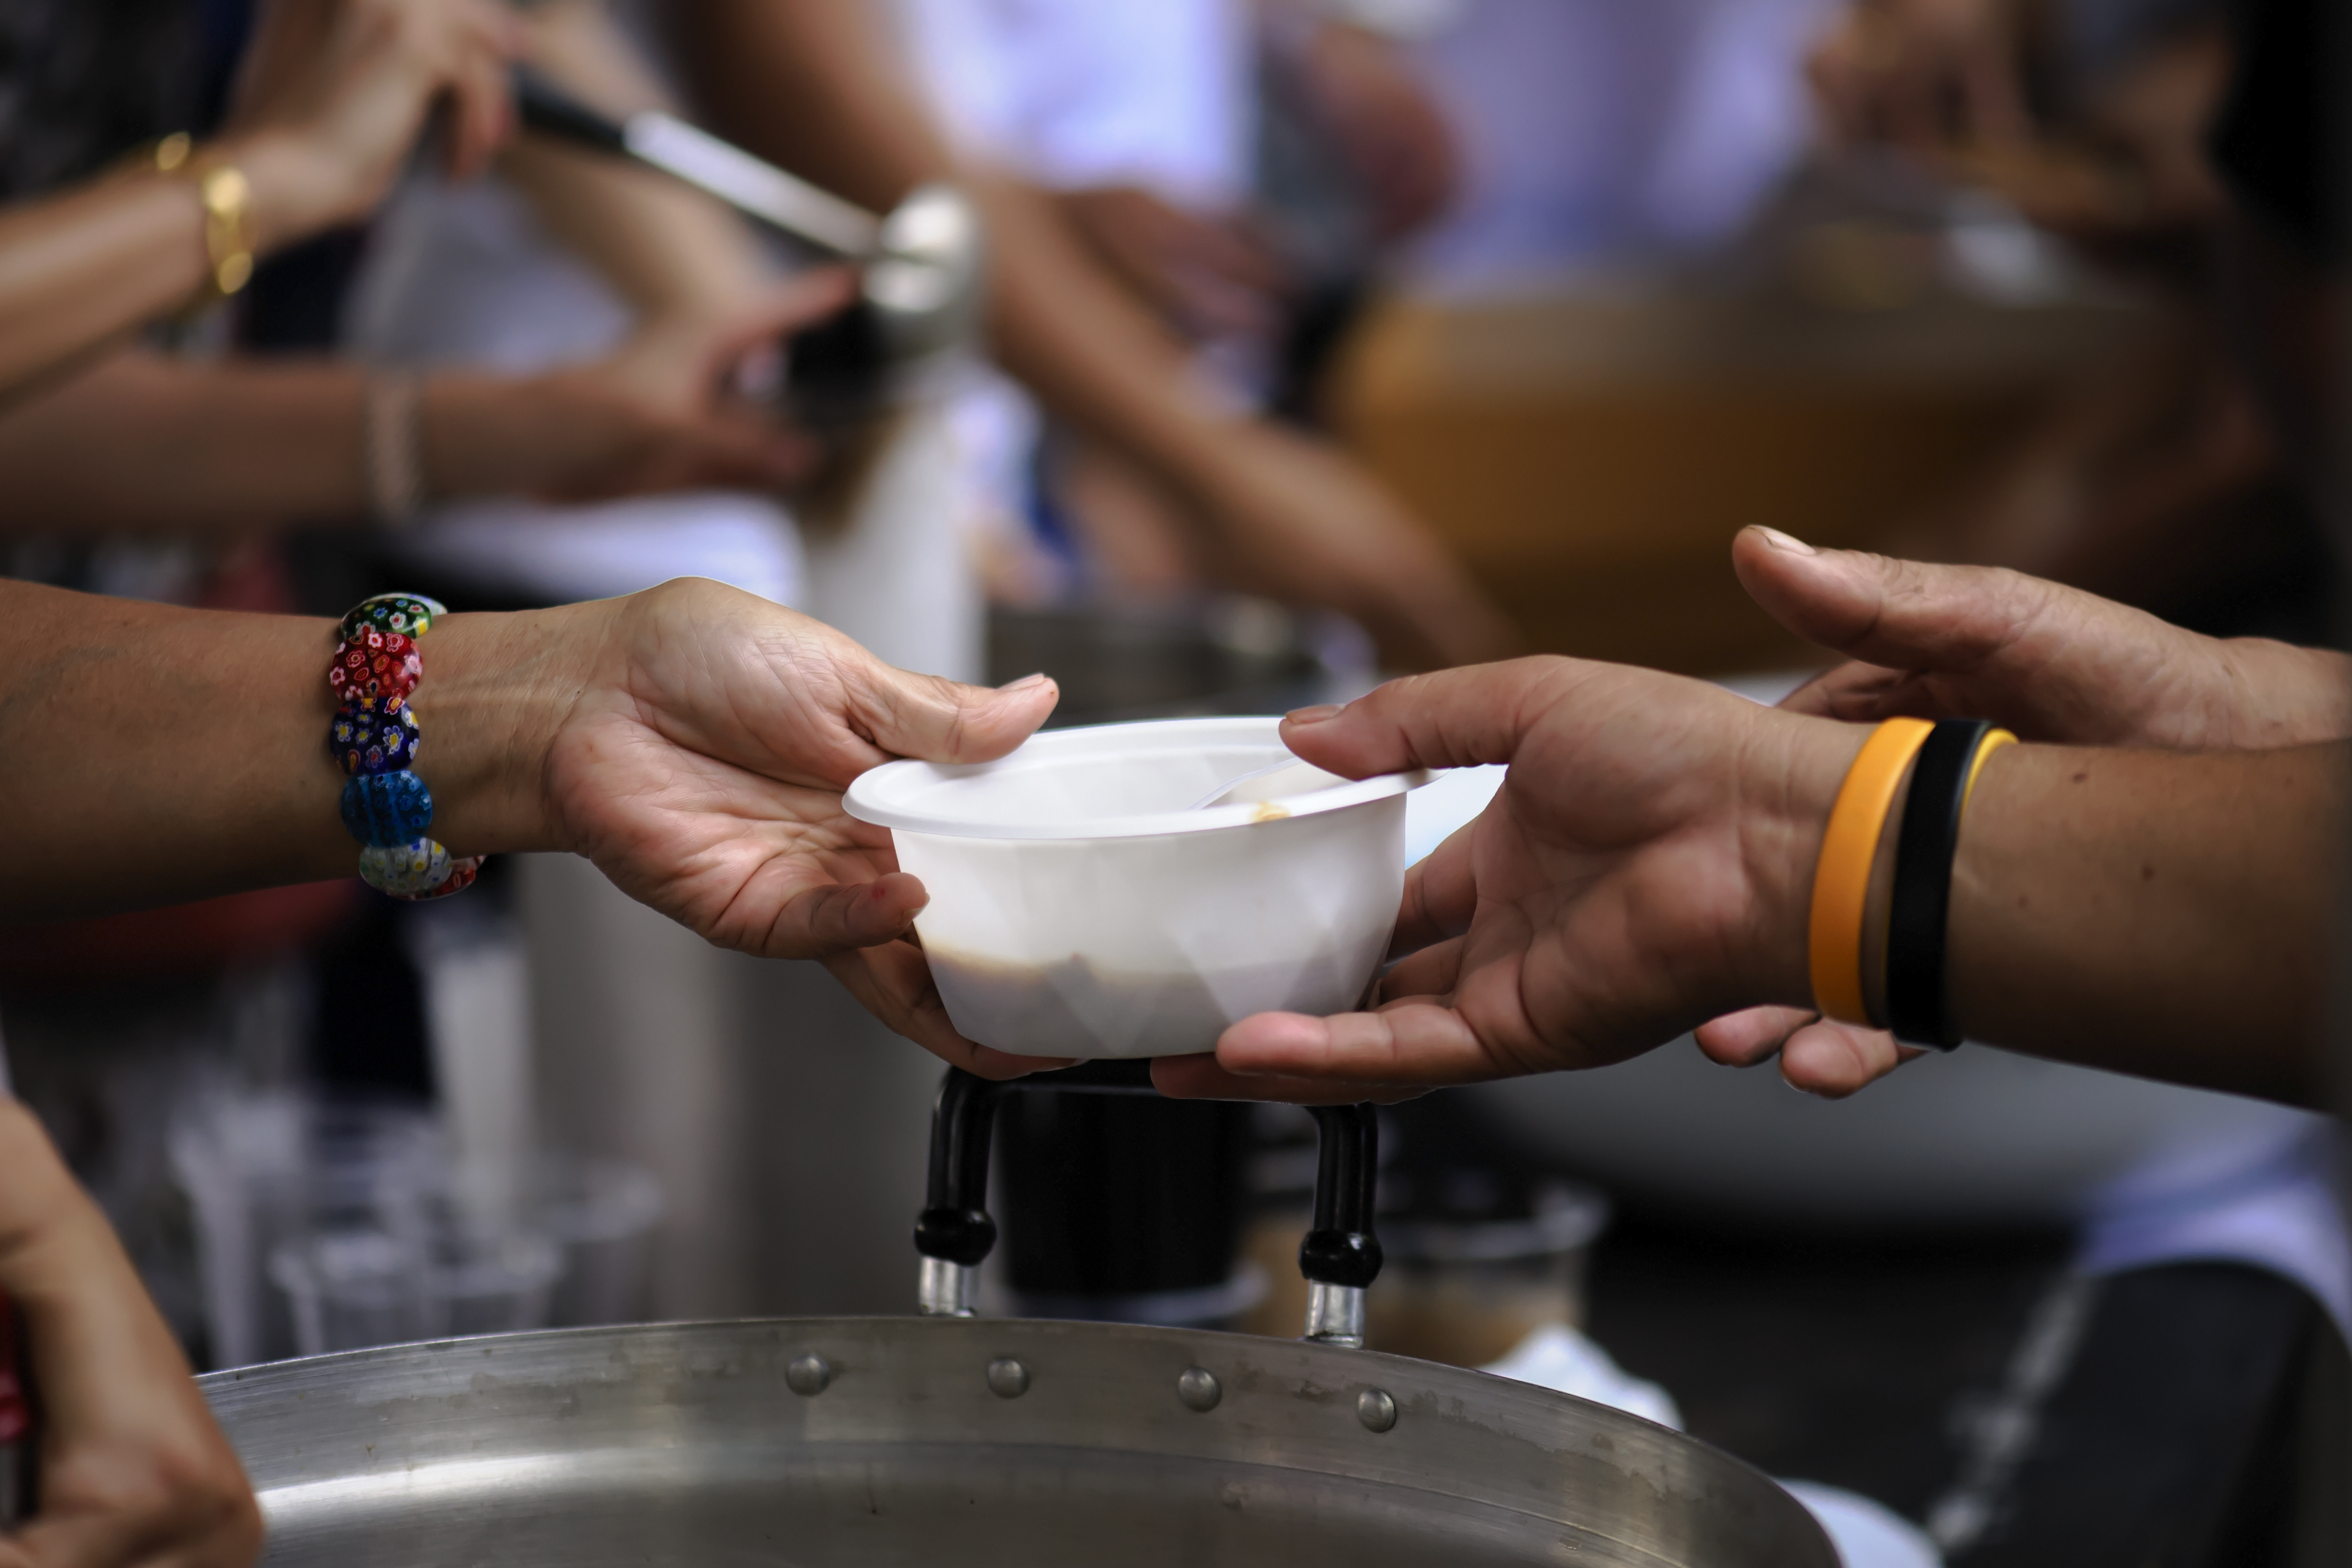 Imagem mostra vasilha com comida sendo servida para uma pessoa